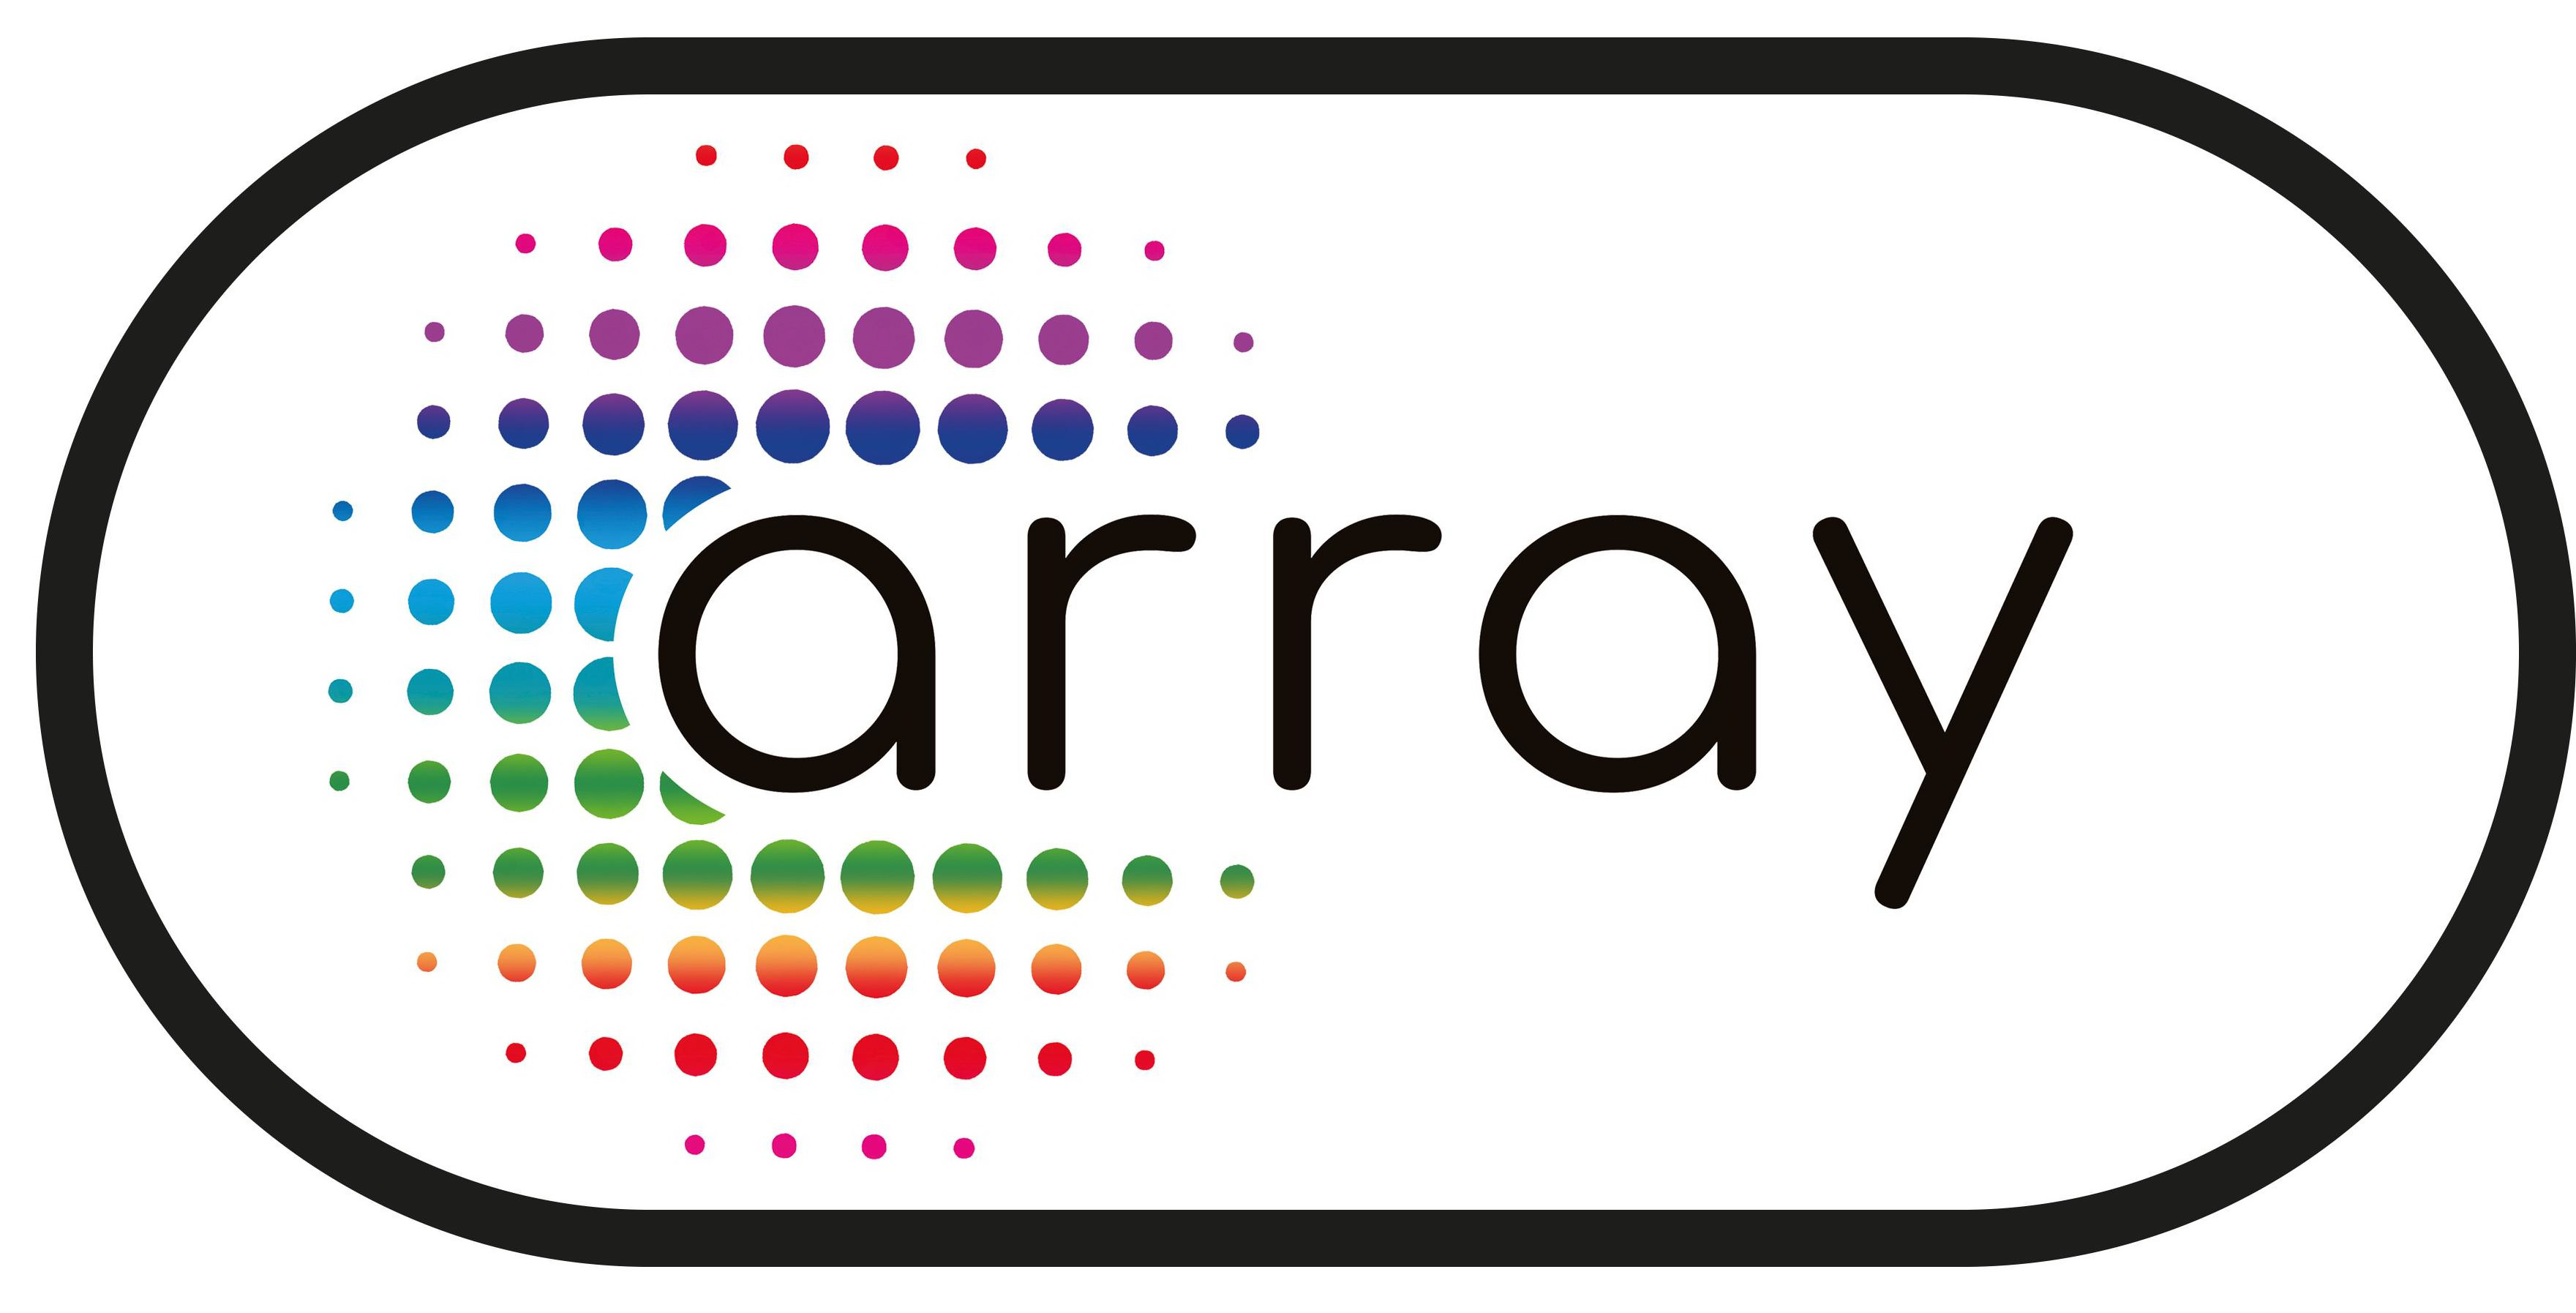 Trademark Logo ARRAY